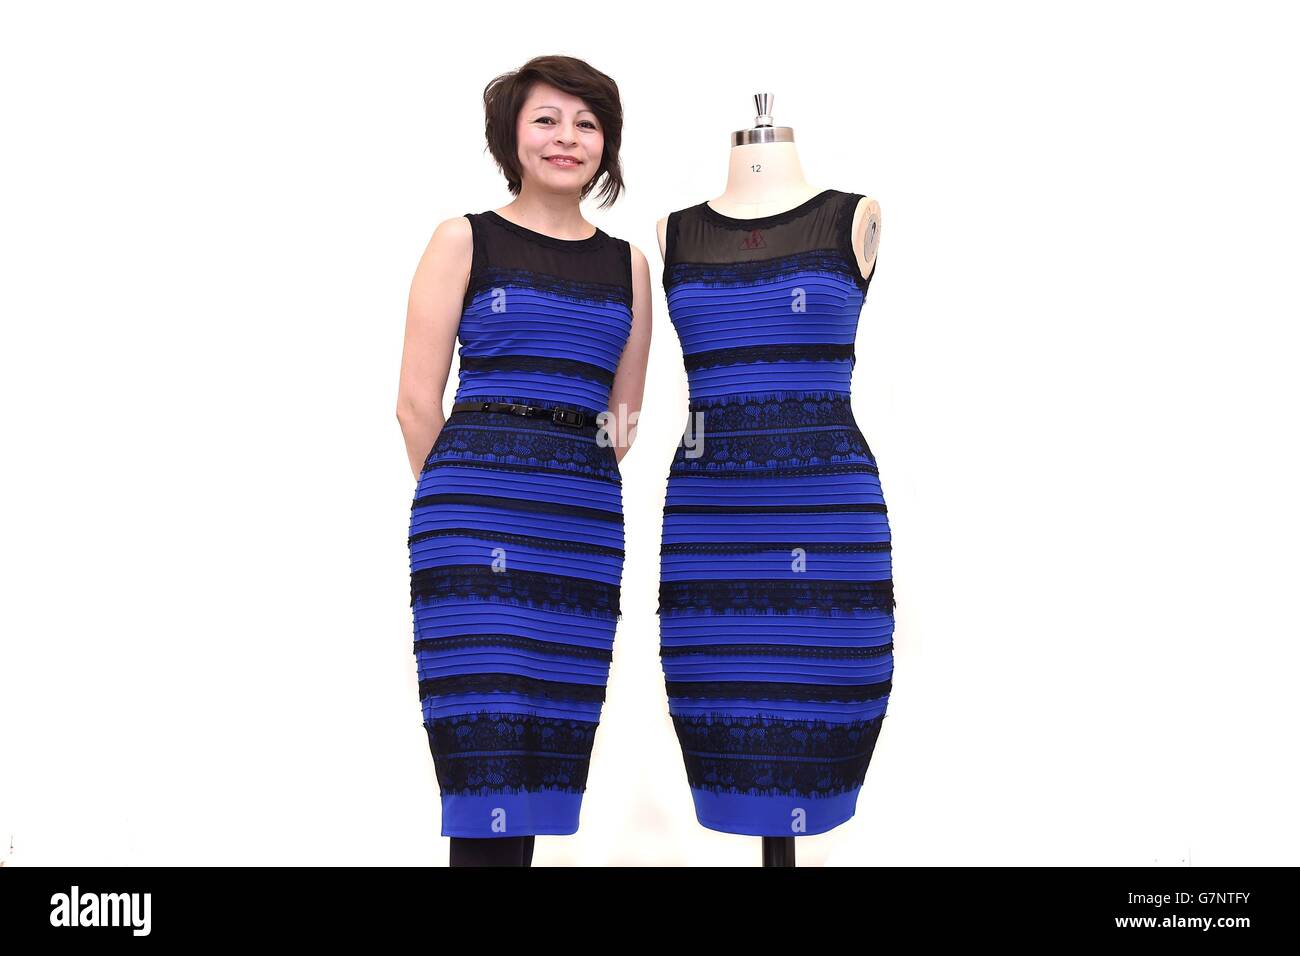 Michele Bastock, Fashion Director bei Roman Originals, modelliert das  zweifarbige Kleid, das auf Twitter zu einer weltweiten Debatte über die  Farbe geführt hat Stockfotografie - Alamy